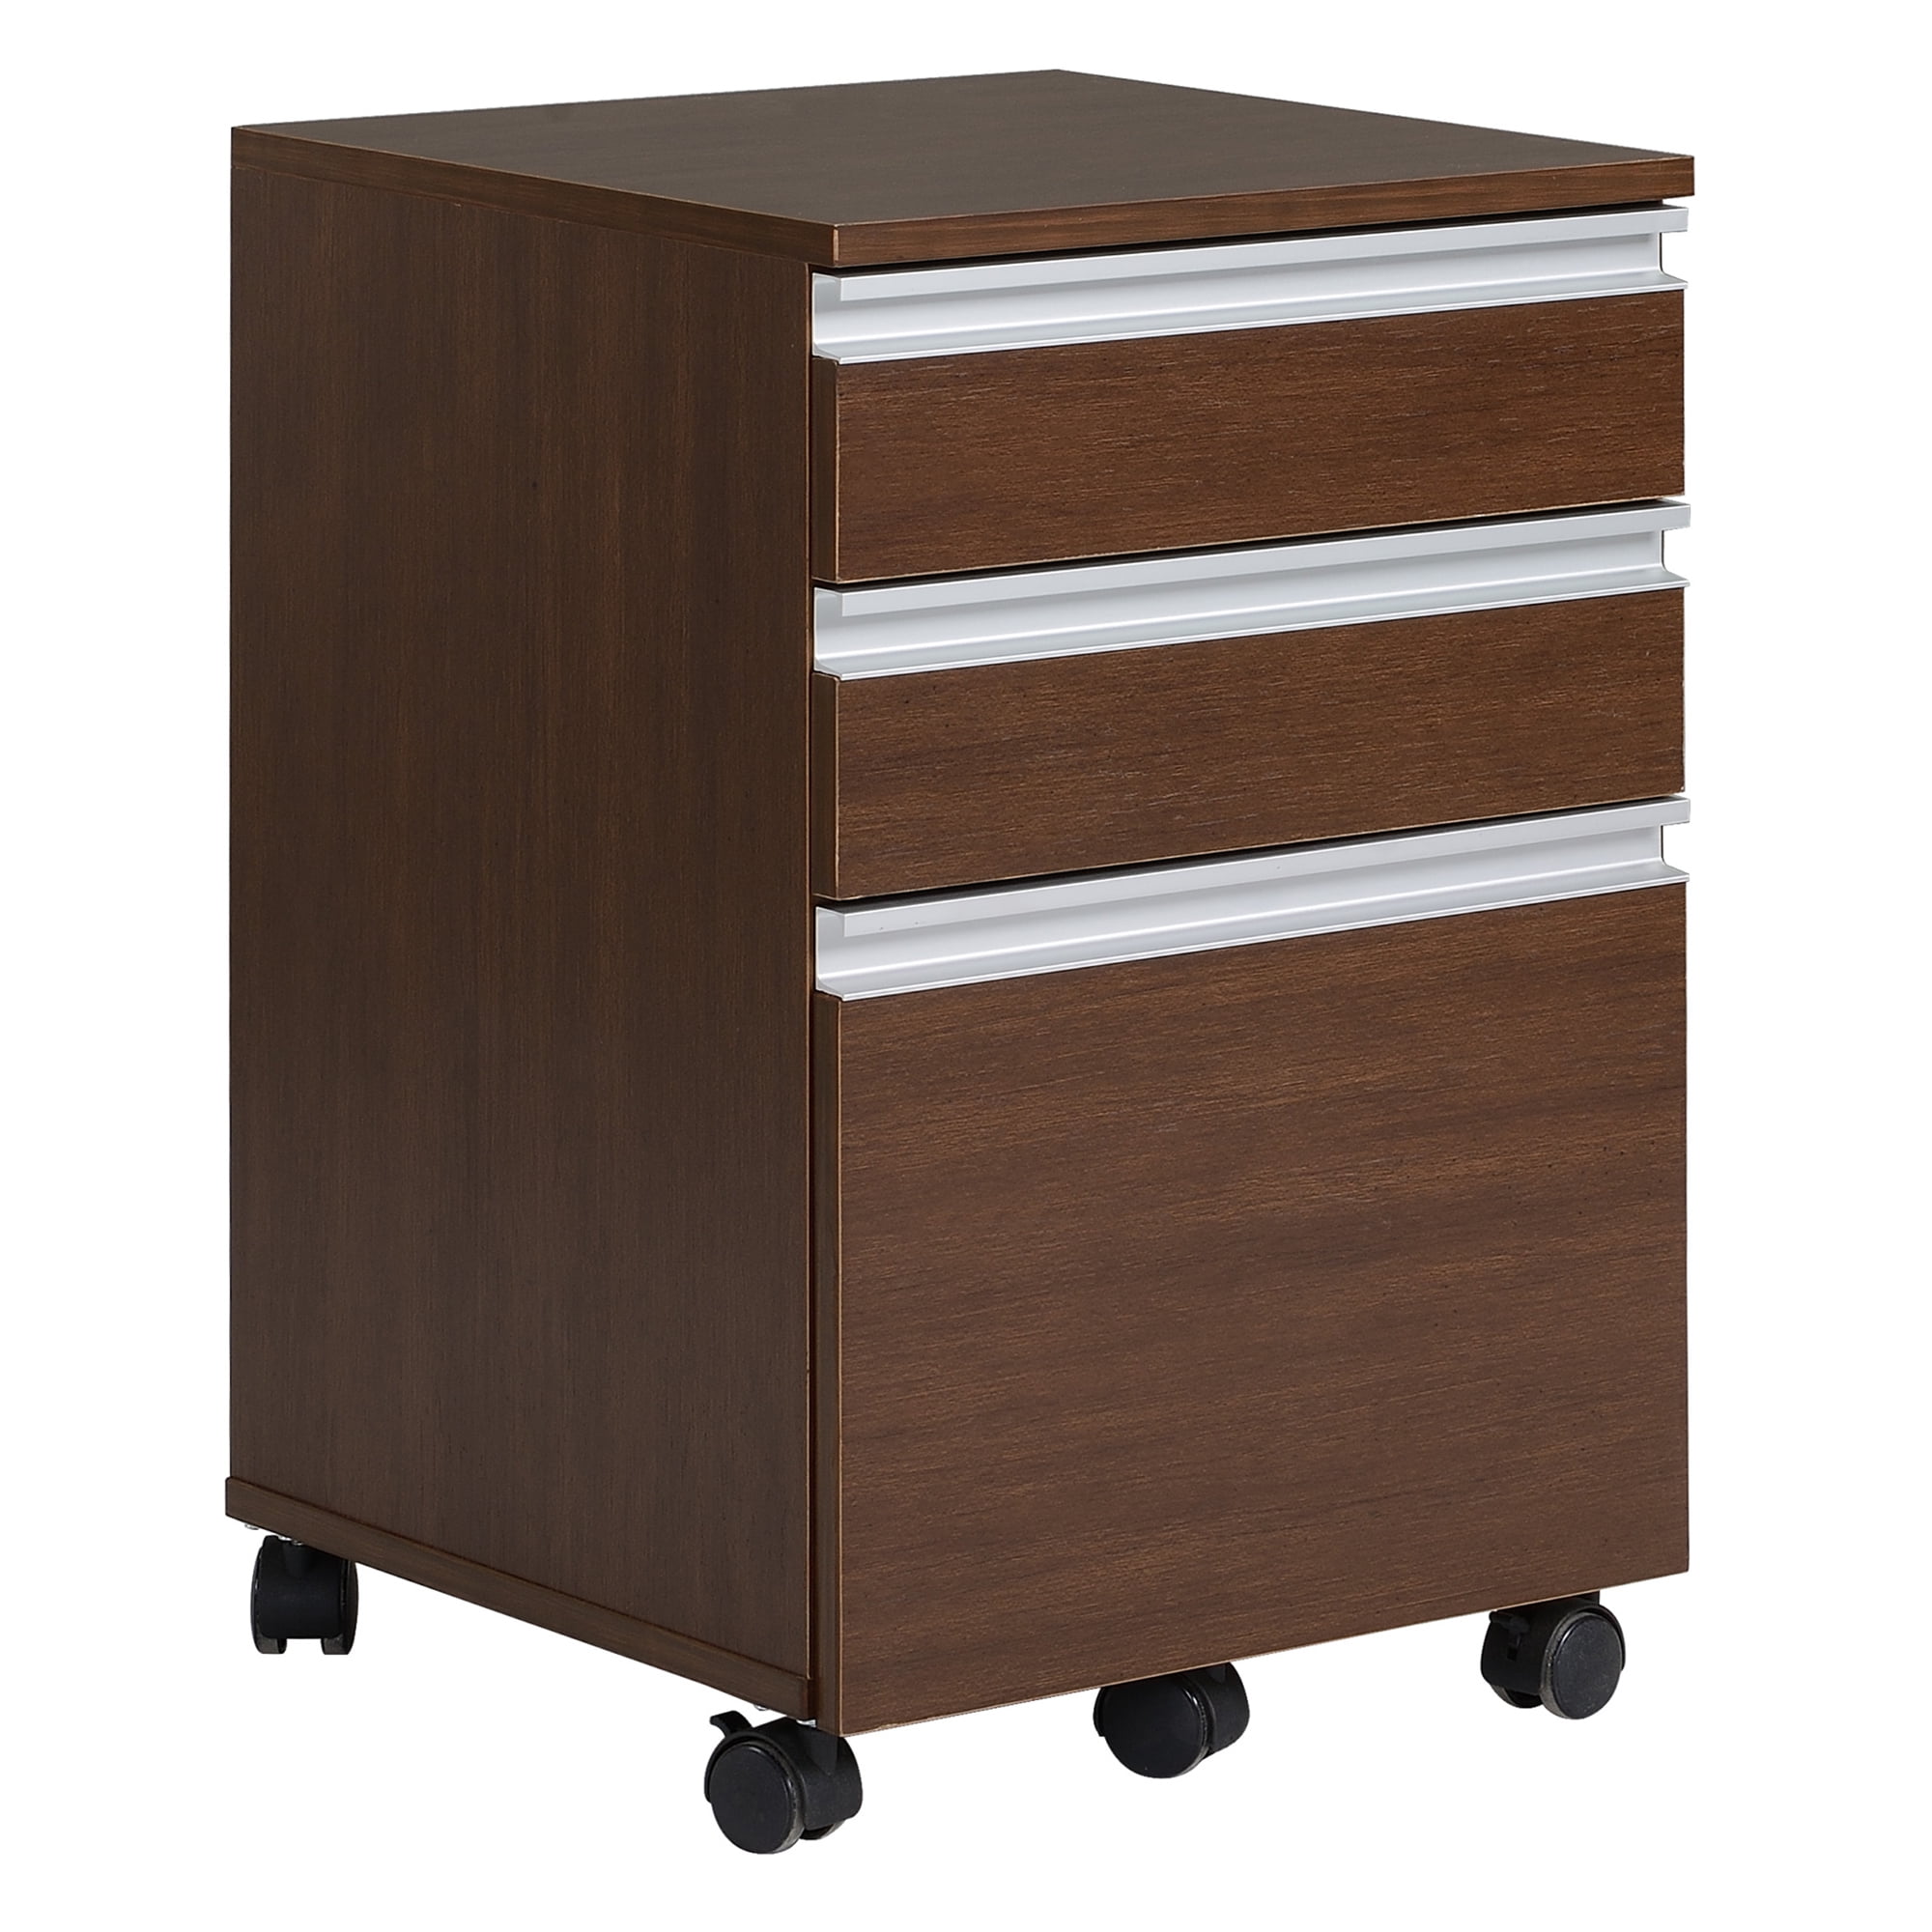 Commclad 3 Drawer Mobile Pedestal File Cabinet Med Tone for sale online 